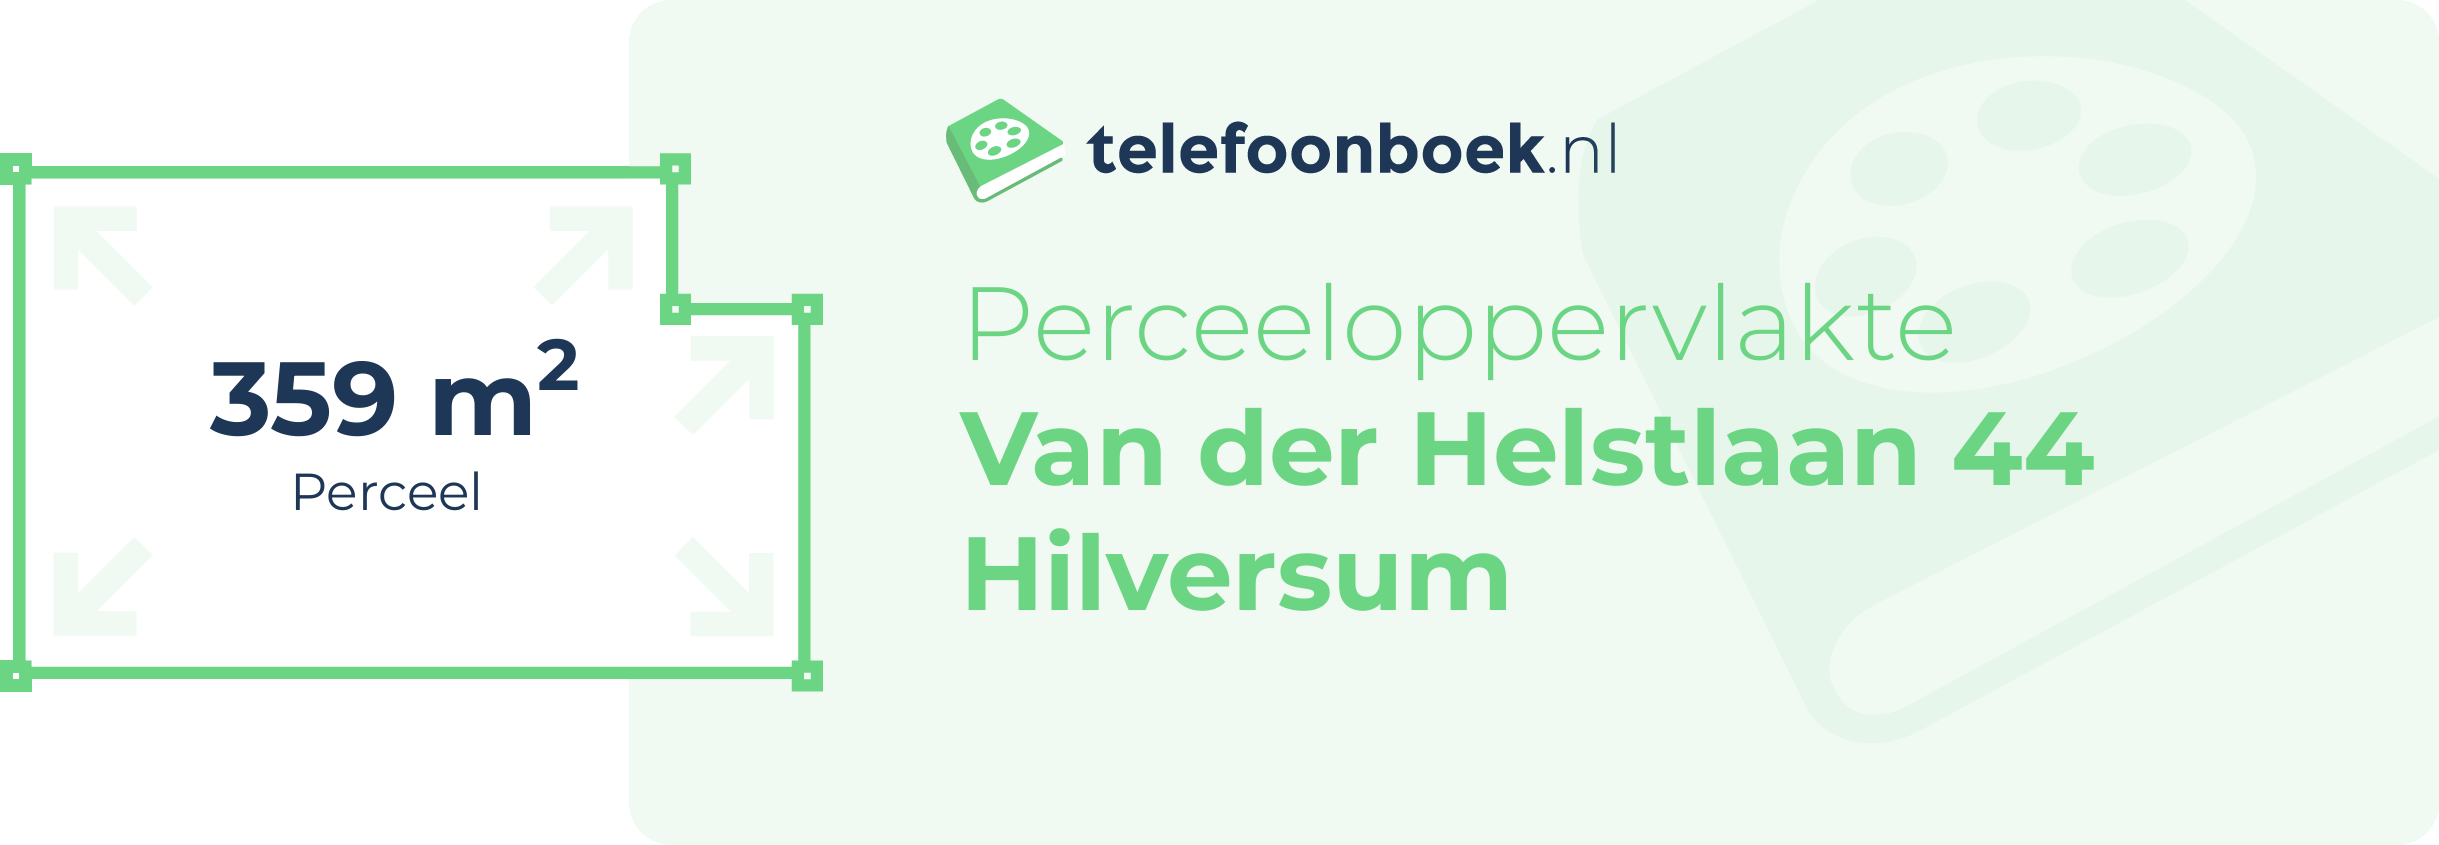 Perceeloppervlakte Van Der Helstlaan 44 Hilversum